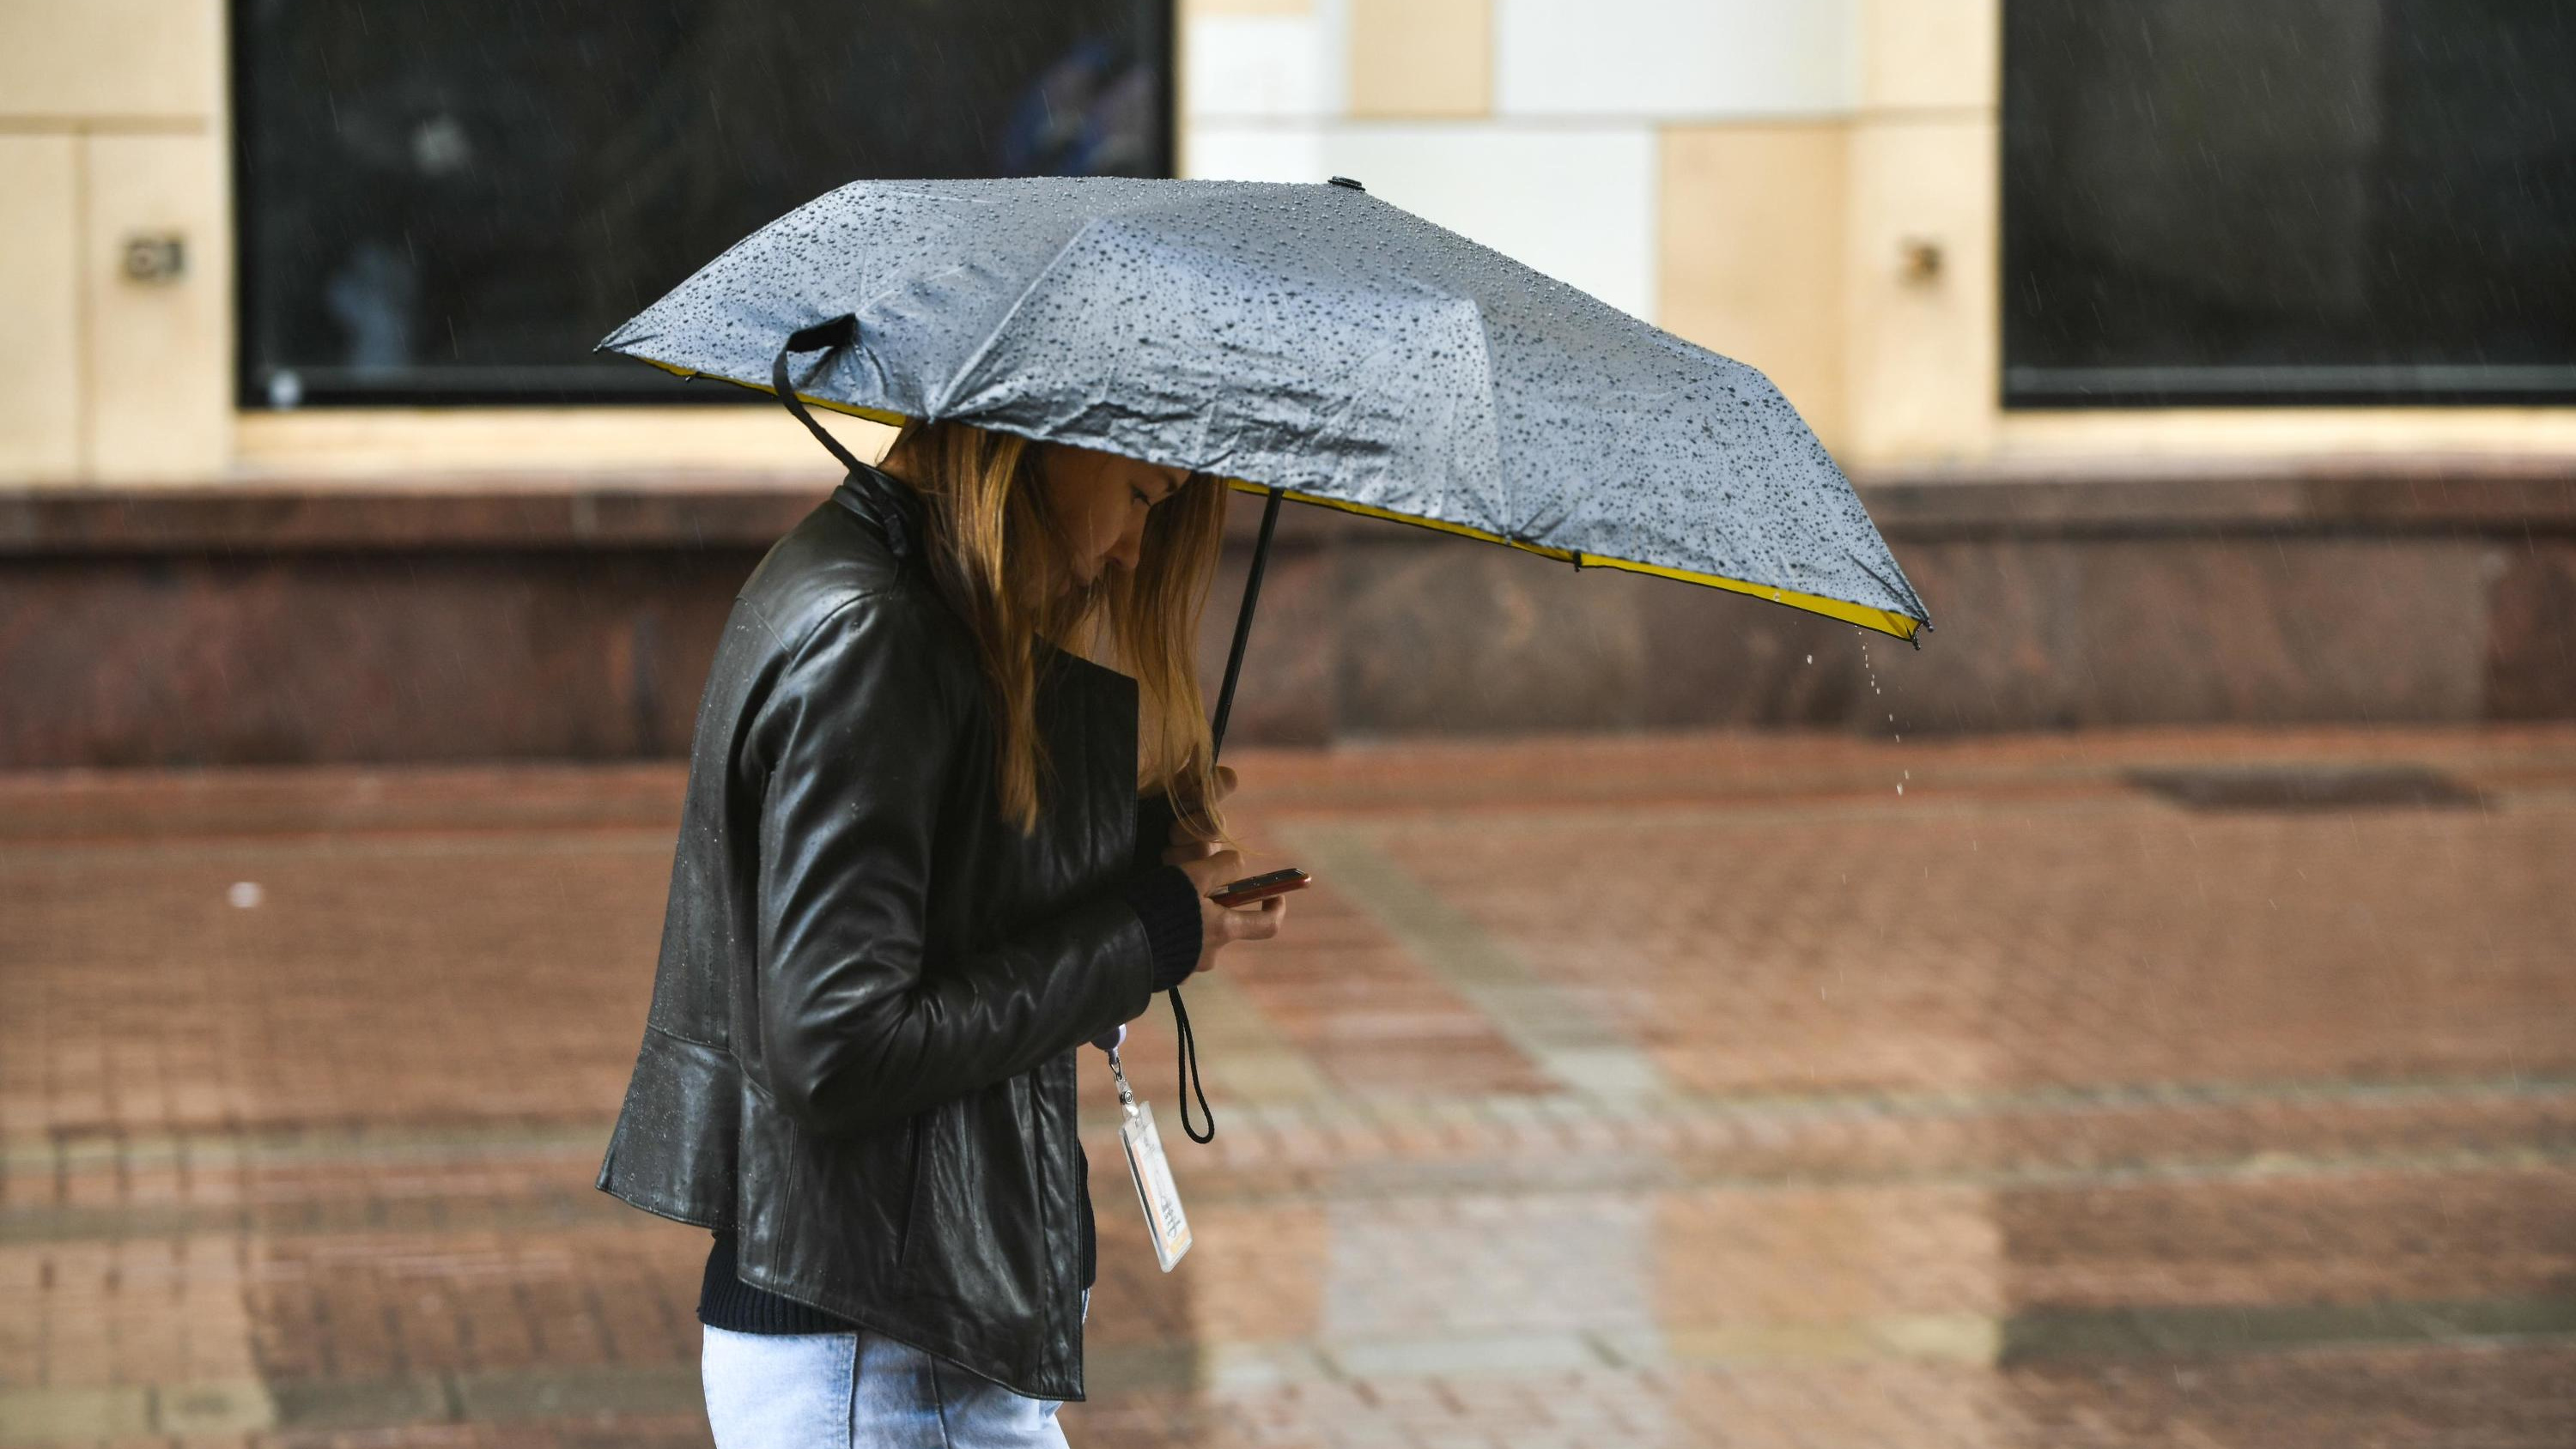 Лето прервется на дожди? Синоптики предупредили москвичей о похолодании — публикуем прогноз на ближайшие дни